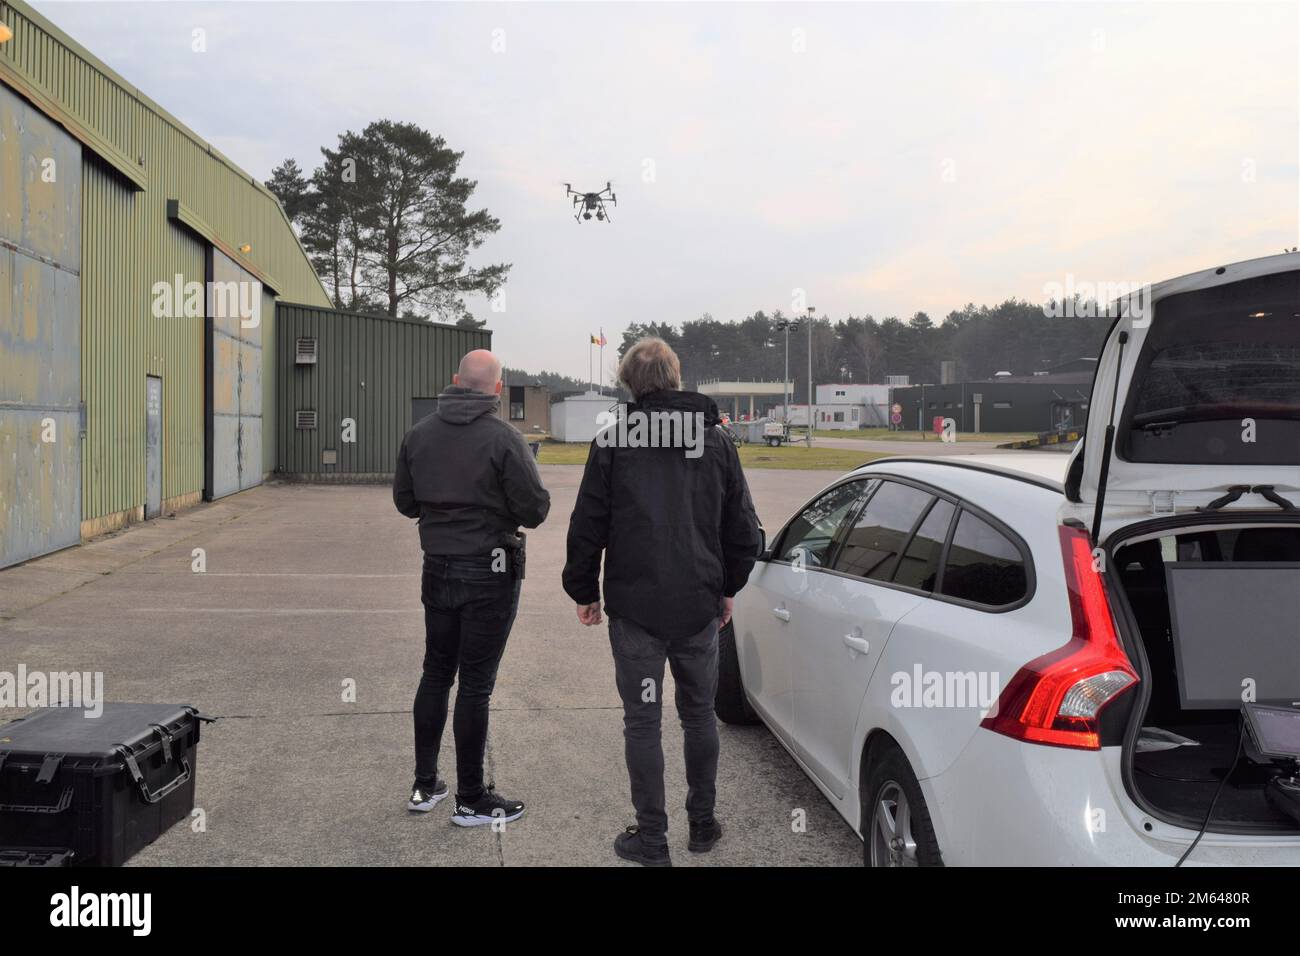 Deux opérateurs de drones, qui travaillent avec les intervenants d'urgence de la nation hôte belge, lancent un drone dans le cadre d'un exercice de protection de l'installation. Membres des États-Unis Garnison de l’armée l’équipe d’intervention d’urgence du Benelux s’est réunie avec des intervenants d’urgence belges pour effectuer un exercice de protection de l’installation au dépôt militaire de Zutendaal, en Belgique, au 30 mars. Le partenariat visait à évaluer le temps de réponse et les efforts de coordination entre les services d'urgence, tandis que les groupes jouaient le rôle de la découverte d'un dispositif explosif improvisé embarqué (VBIED) au dépôt, stationné près d'un réservoir de 100 000 litres d'huile de chauffage Banque D'Images